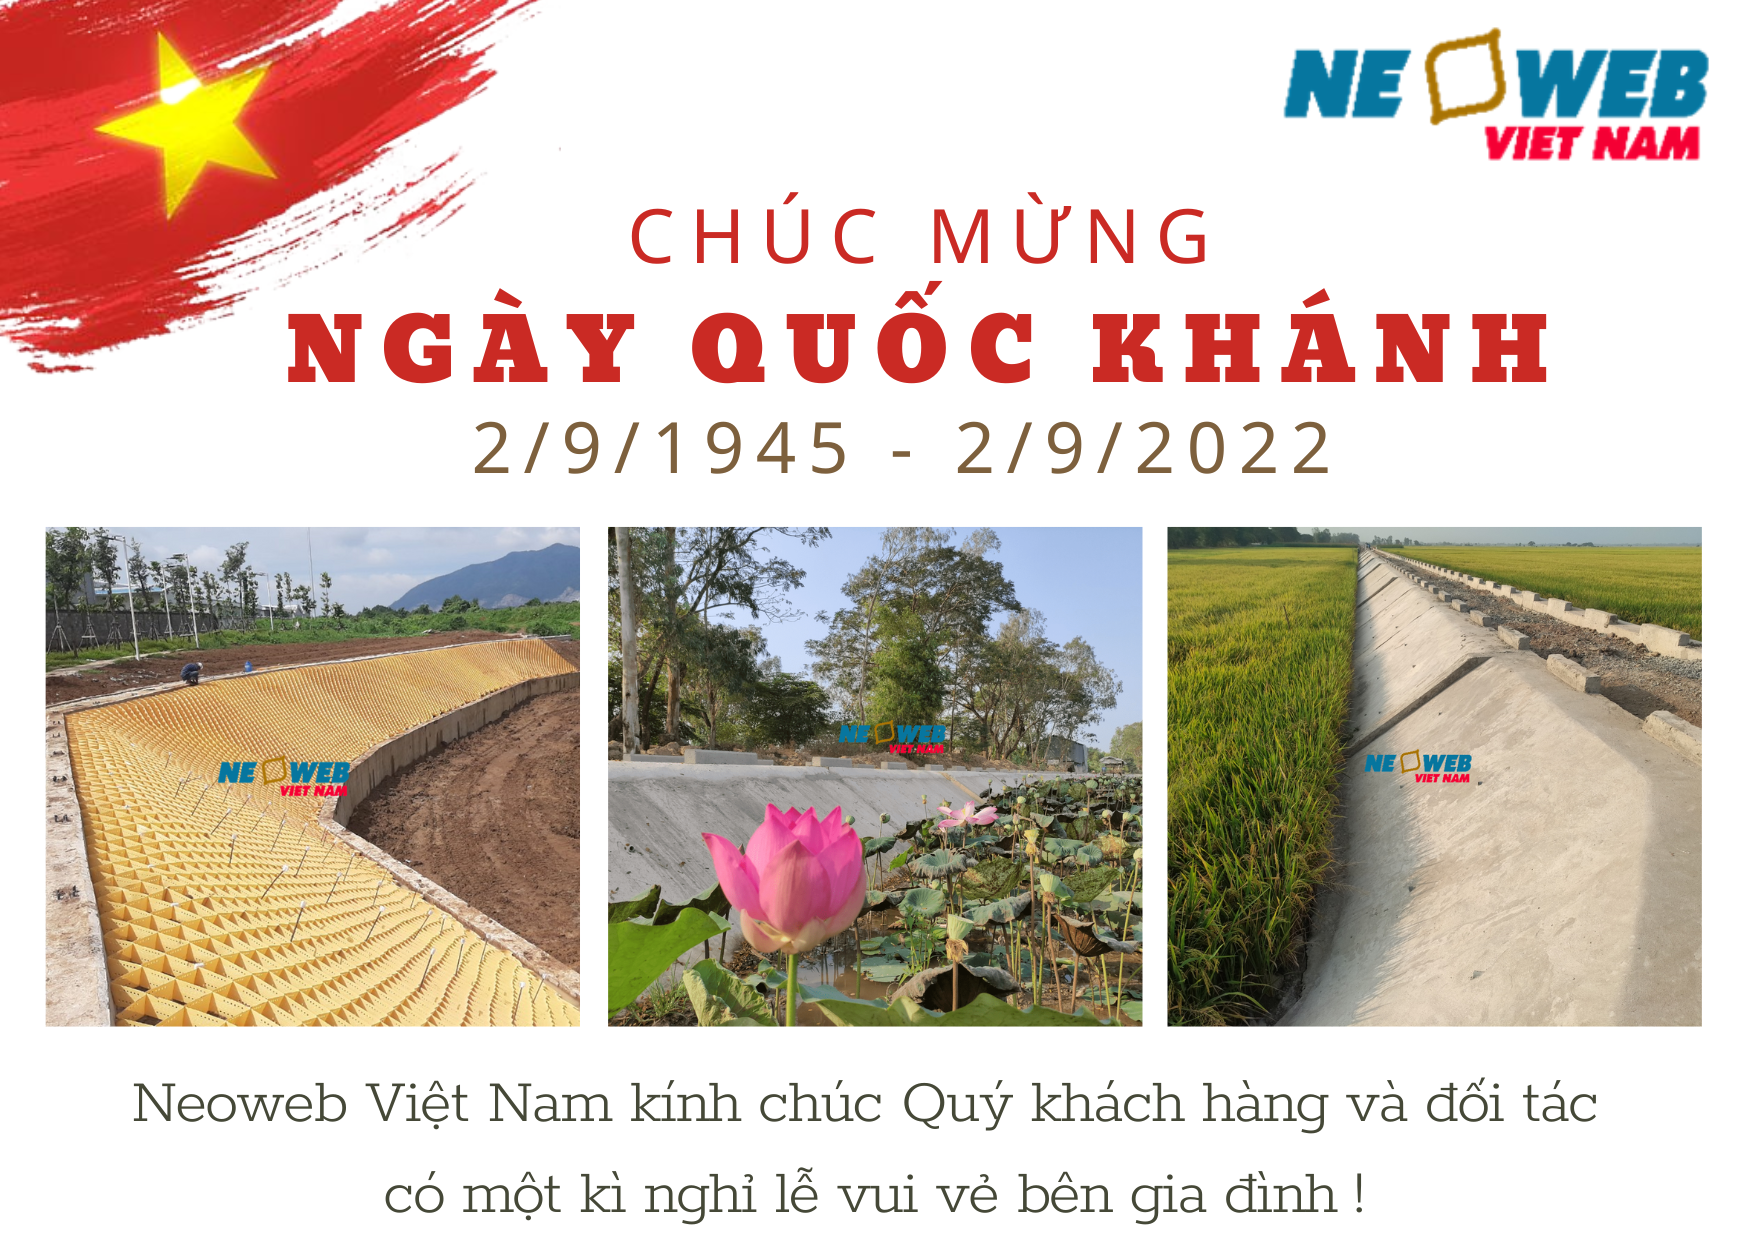 Neoweb Việt Nam chúc mừng Quốc Khánh